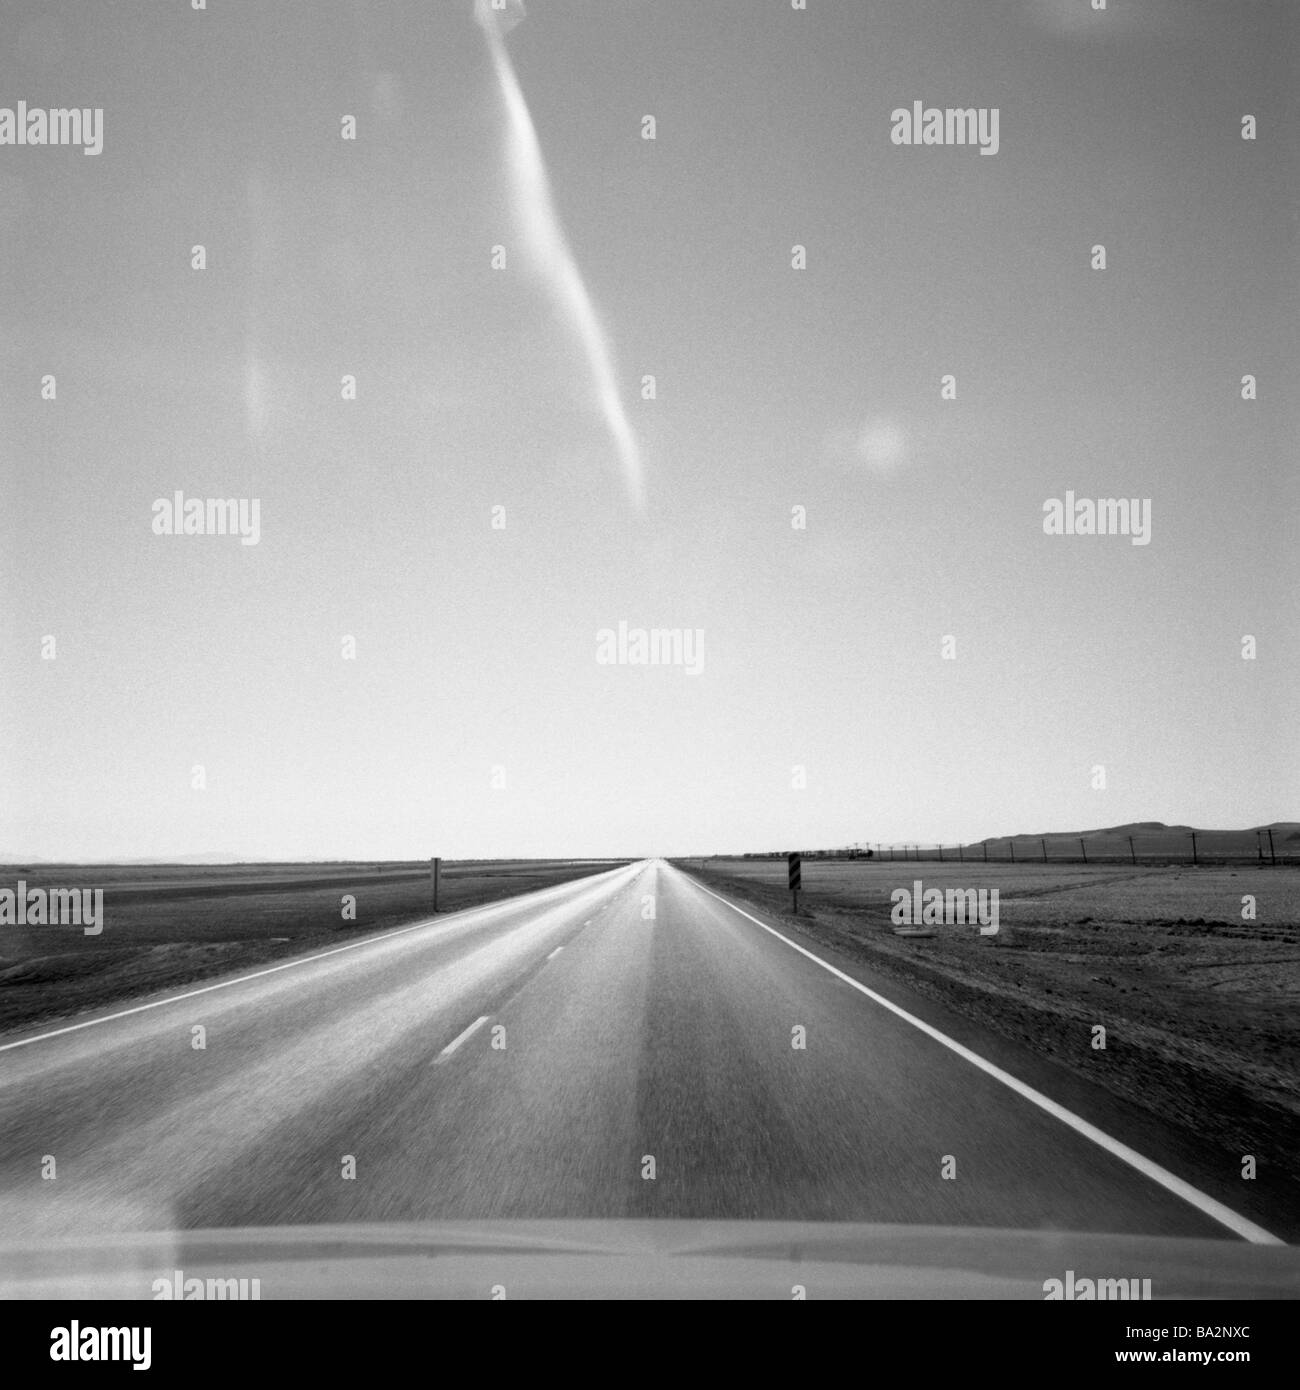 Landstraße genau vanishing Point s/w USA Nevada Highway 95 Straße Asphalt Markierung Straße-Kennzeichnung Himmel wolkenlos sonnig Stockfoto